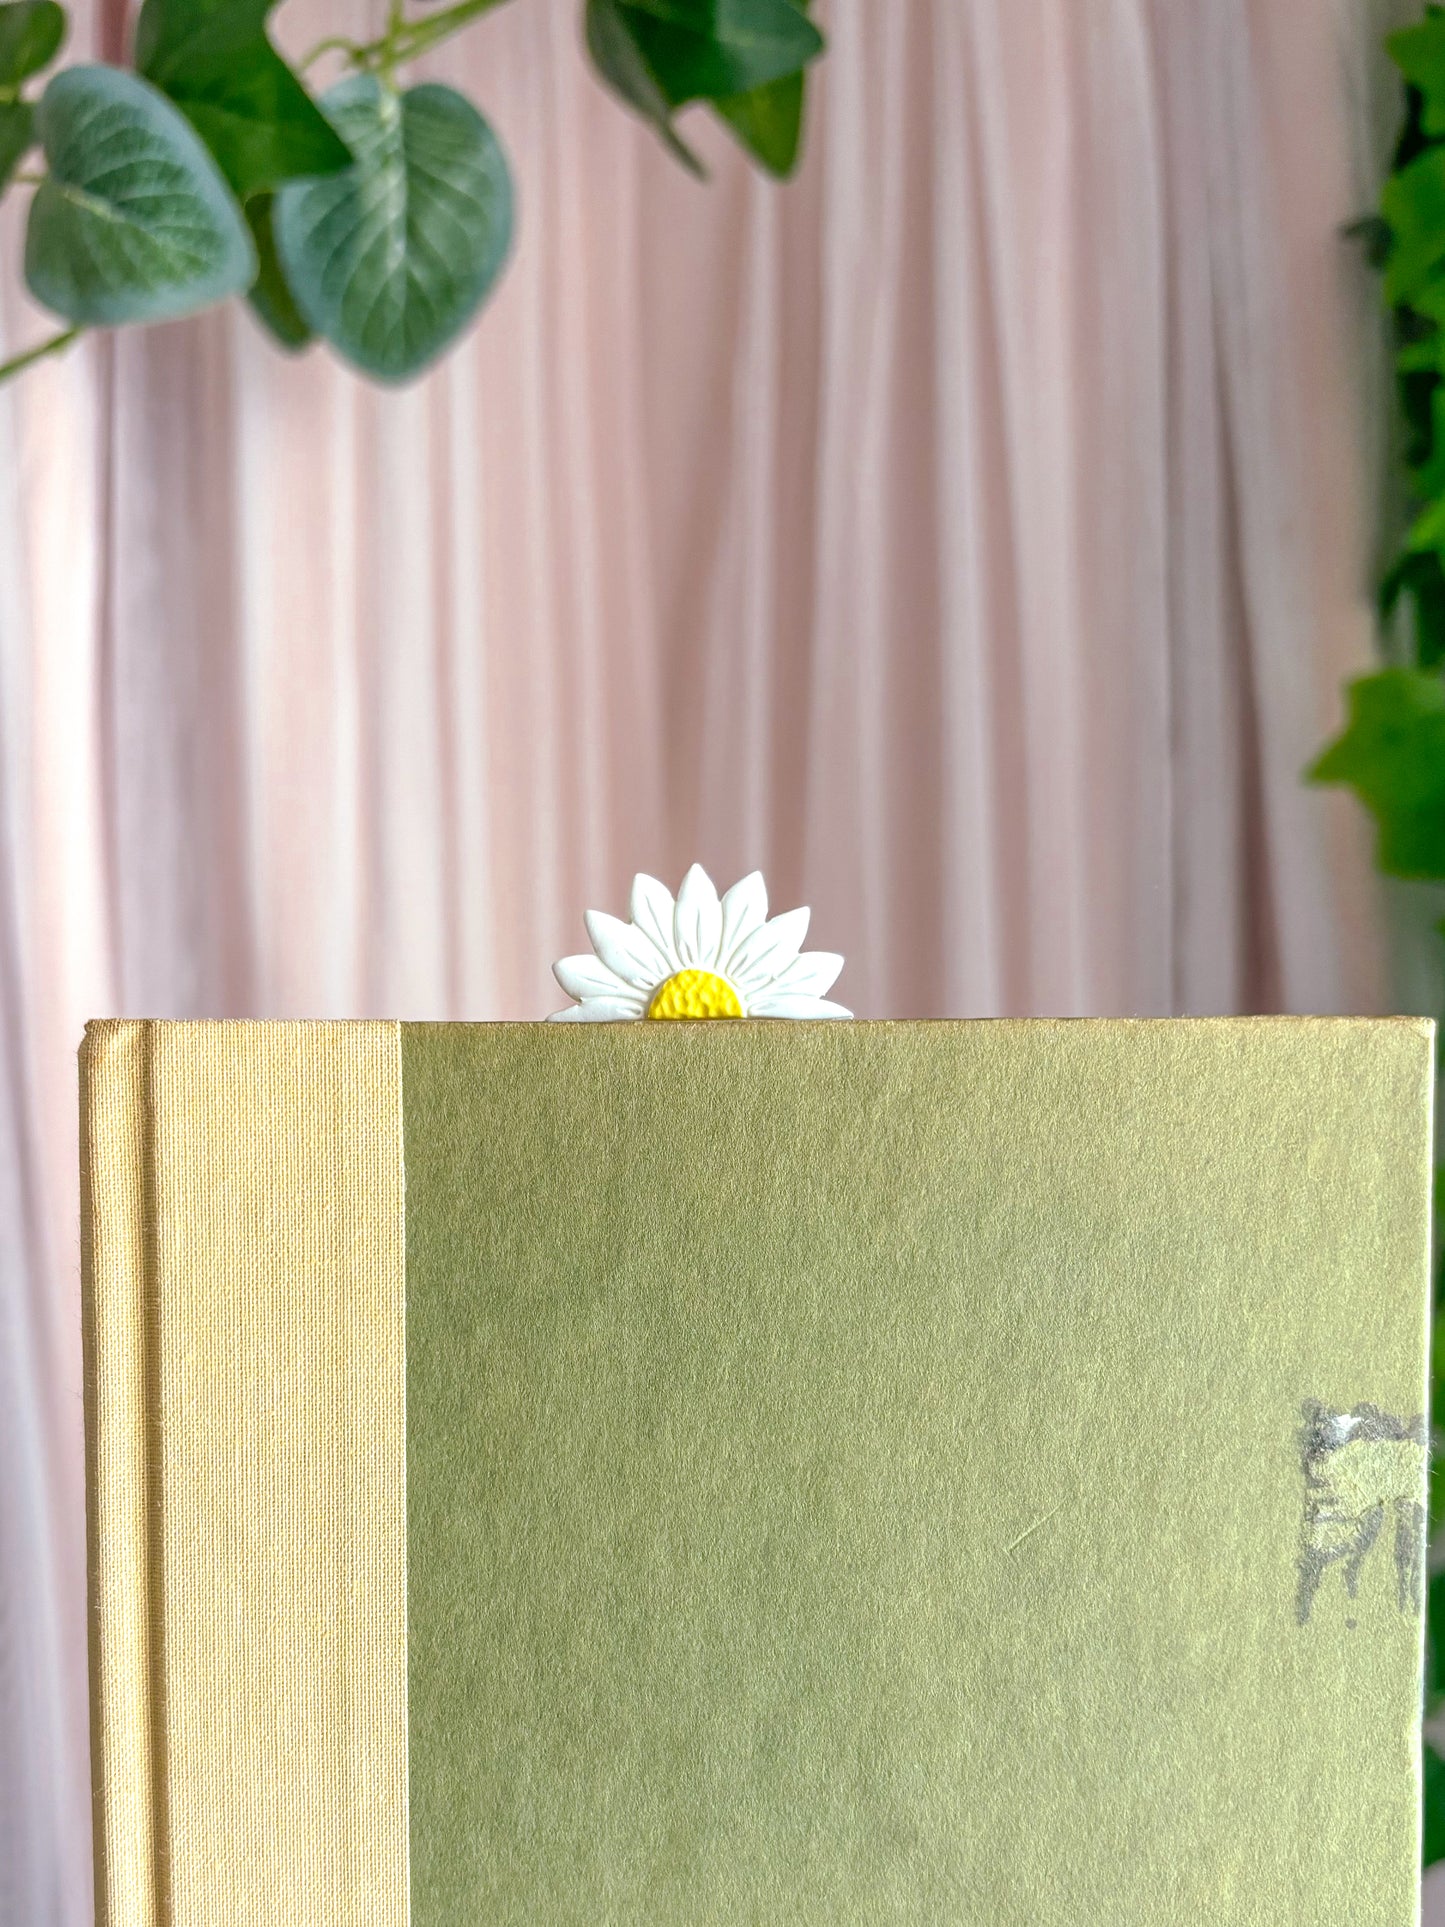 Daisy Paperclip Bookmark